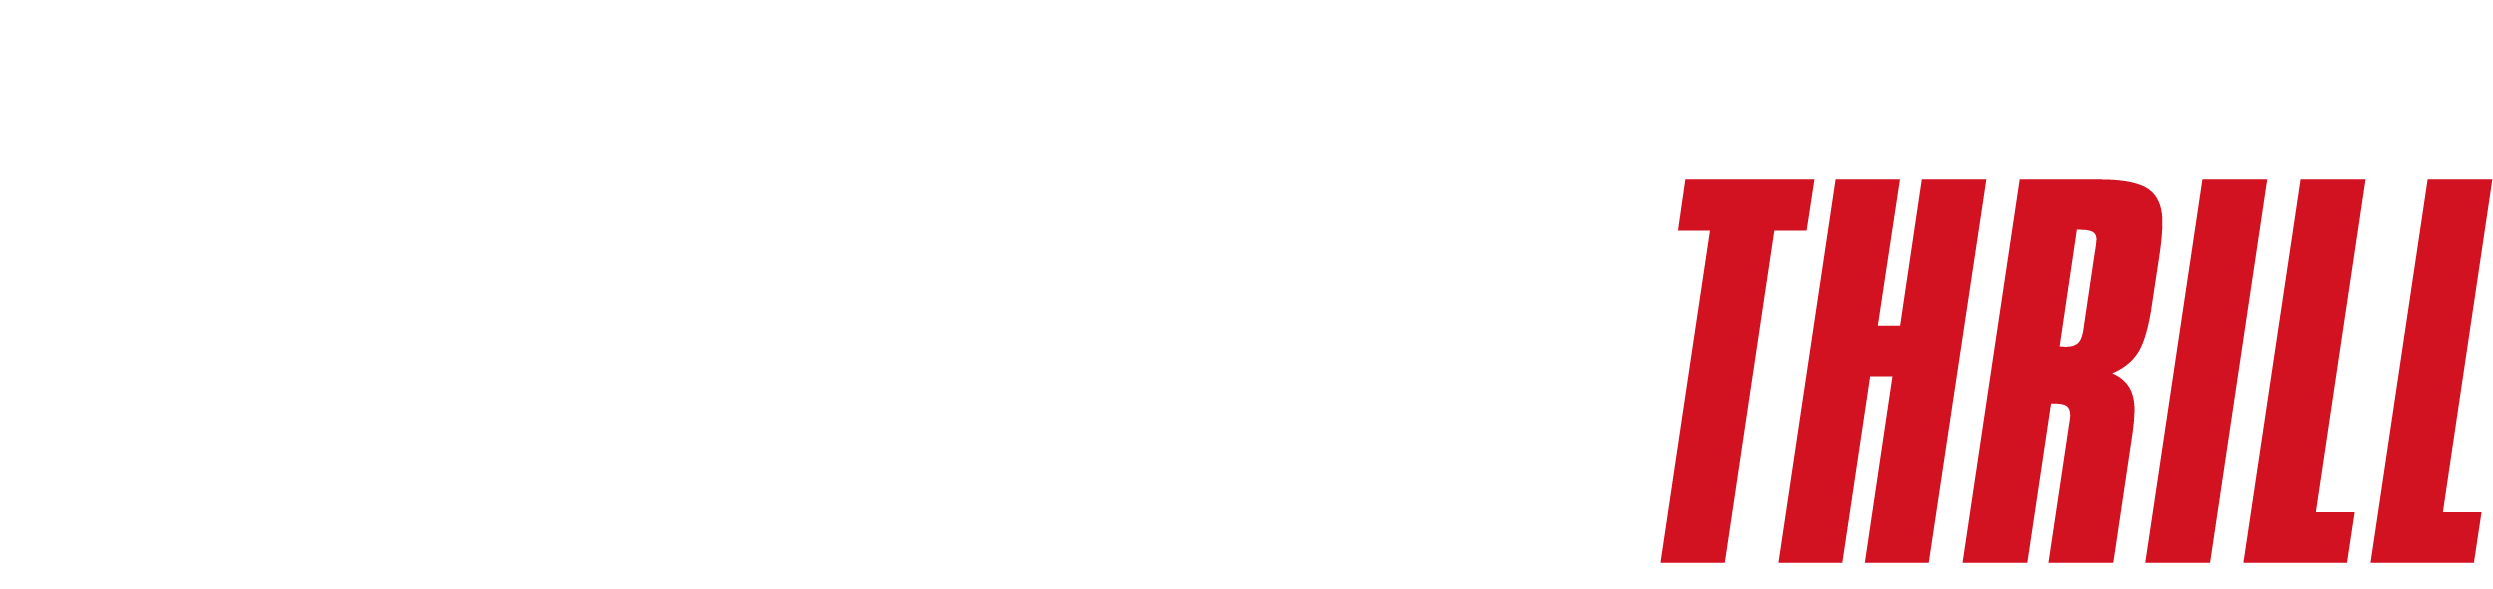 Cine Thrill Logo